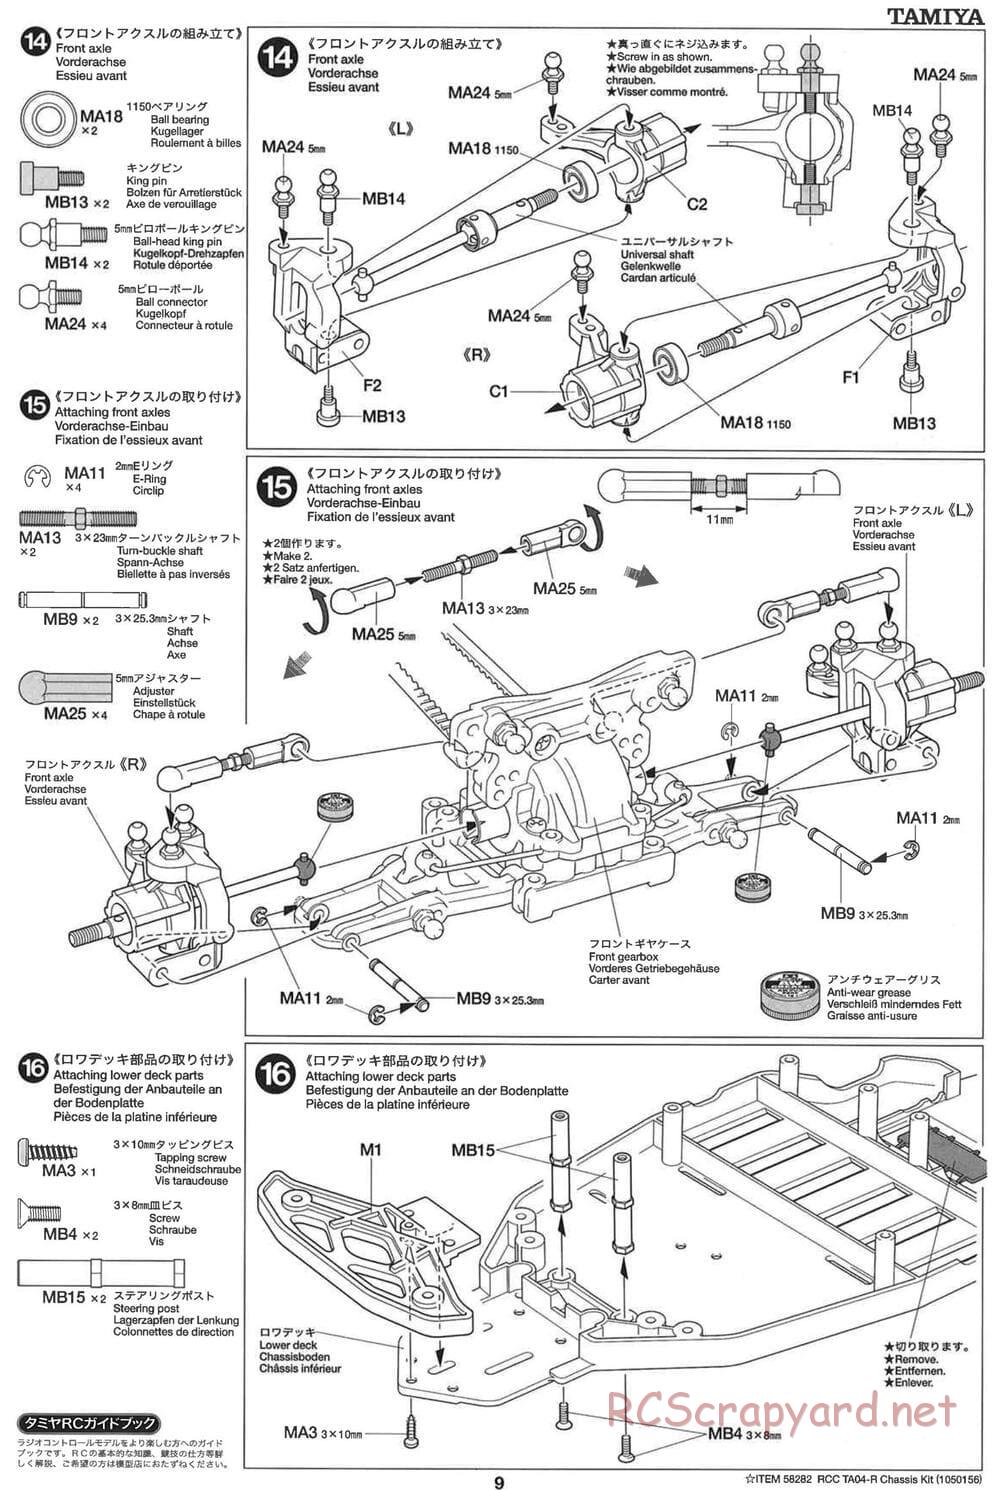 Tamiya - TA-04R Chassis - Manual - Page 9